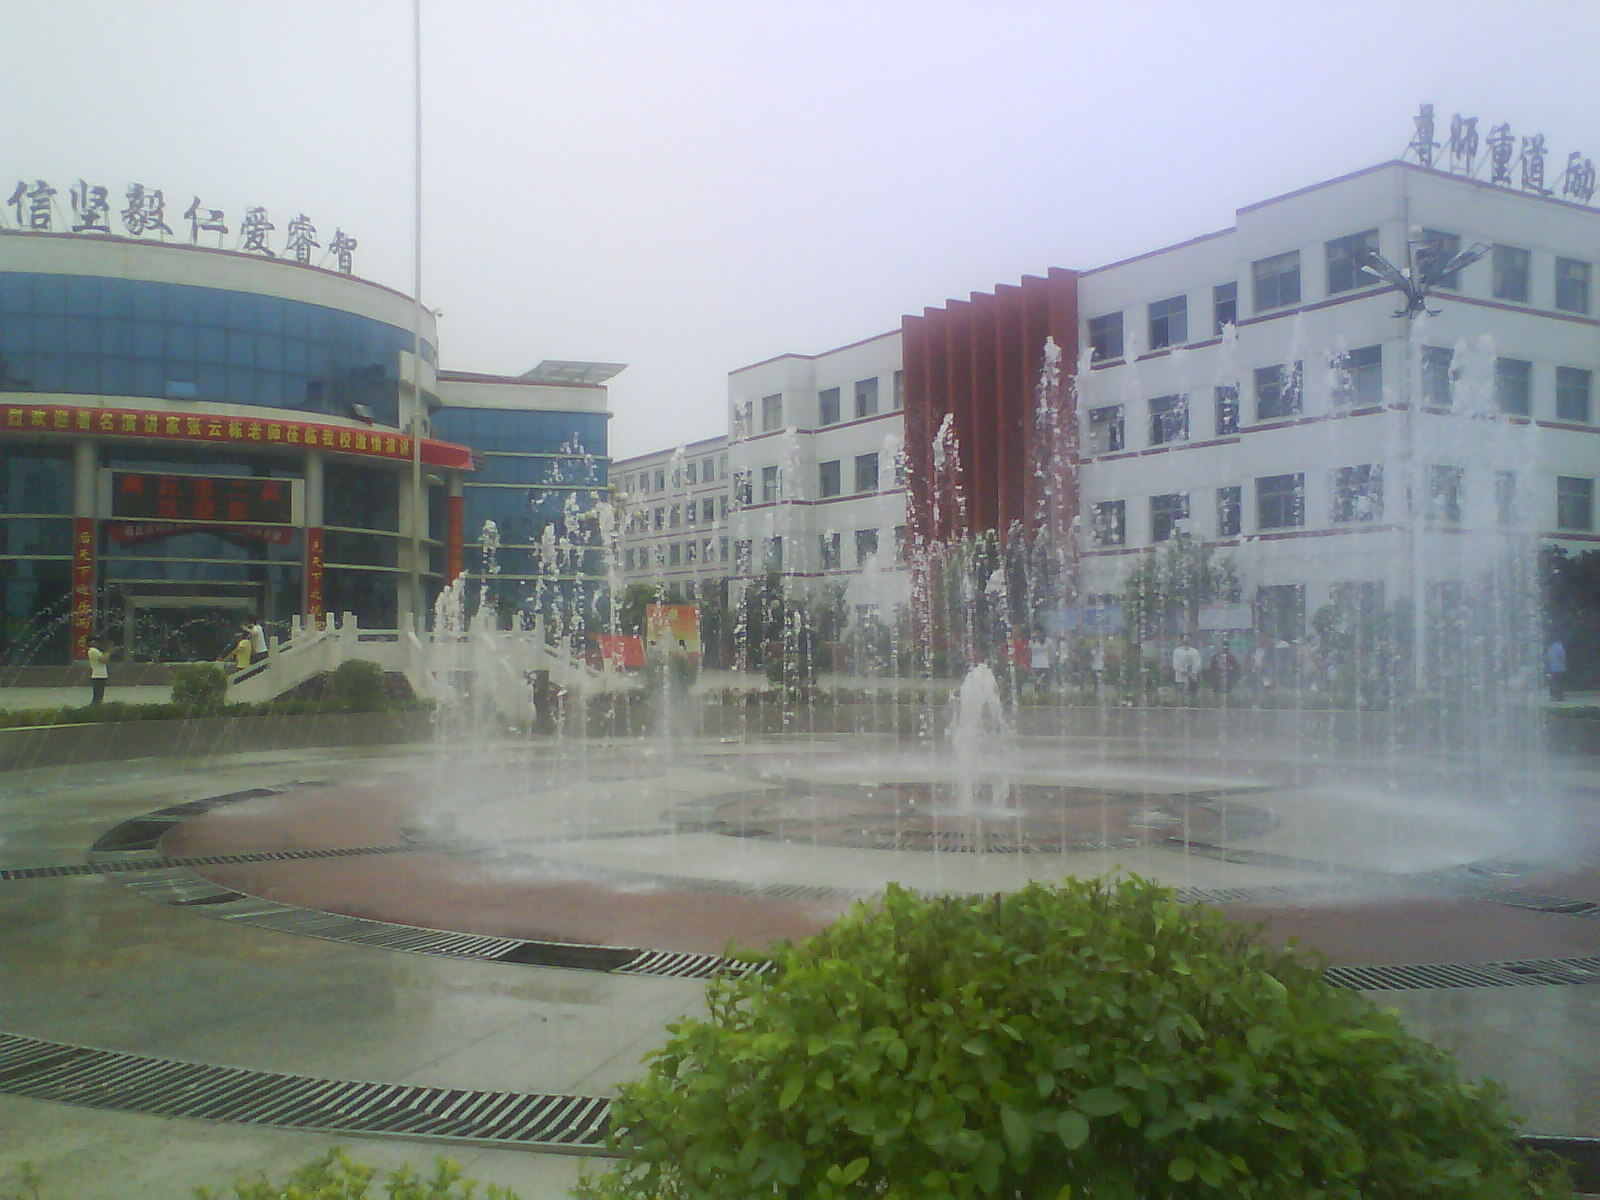 校園大門的噴泉